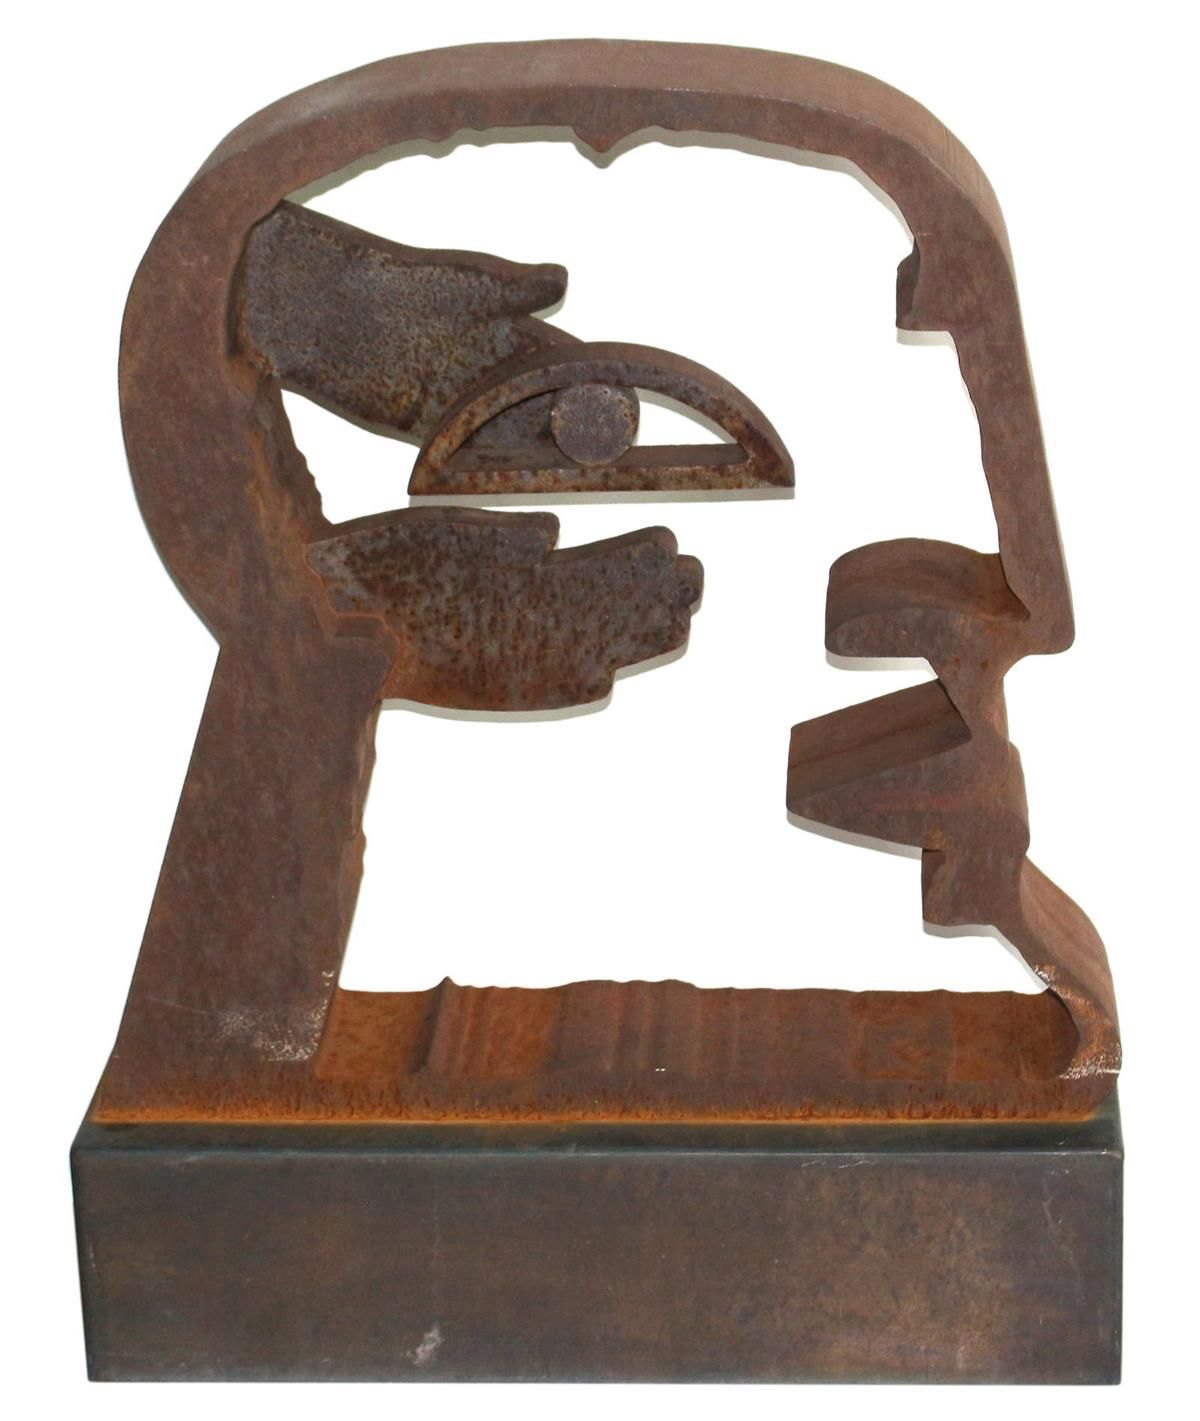 Antes, Horst (1936 Heppenheim). "The head" steel sculpture, corroded around 1980&hellip;